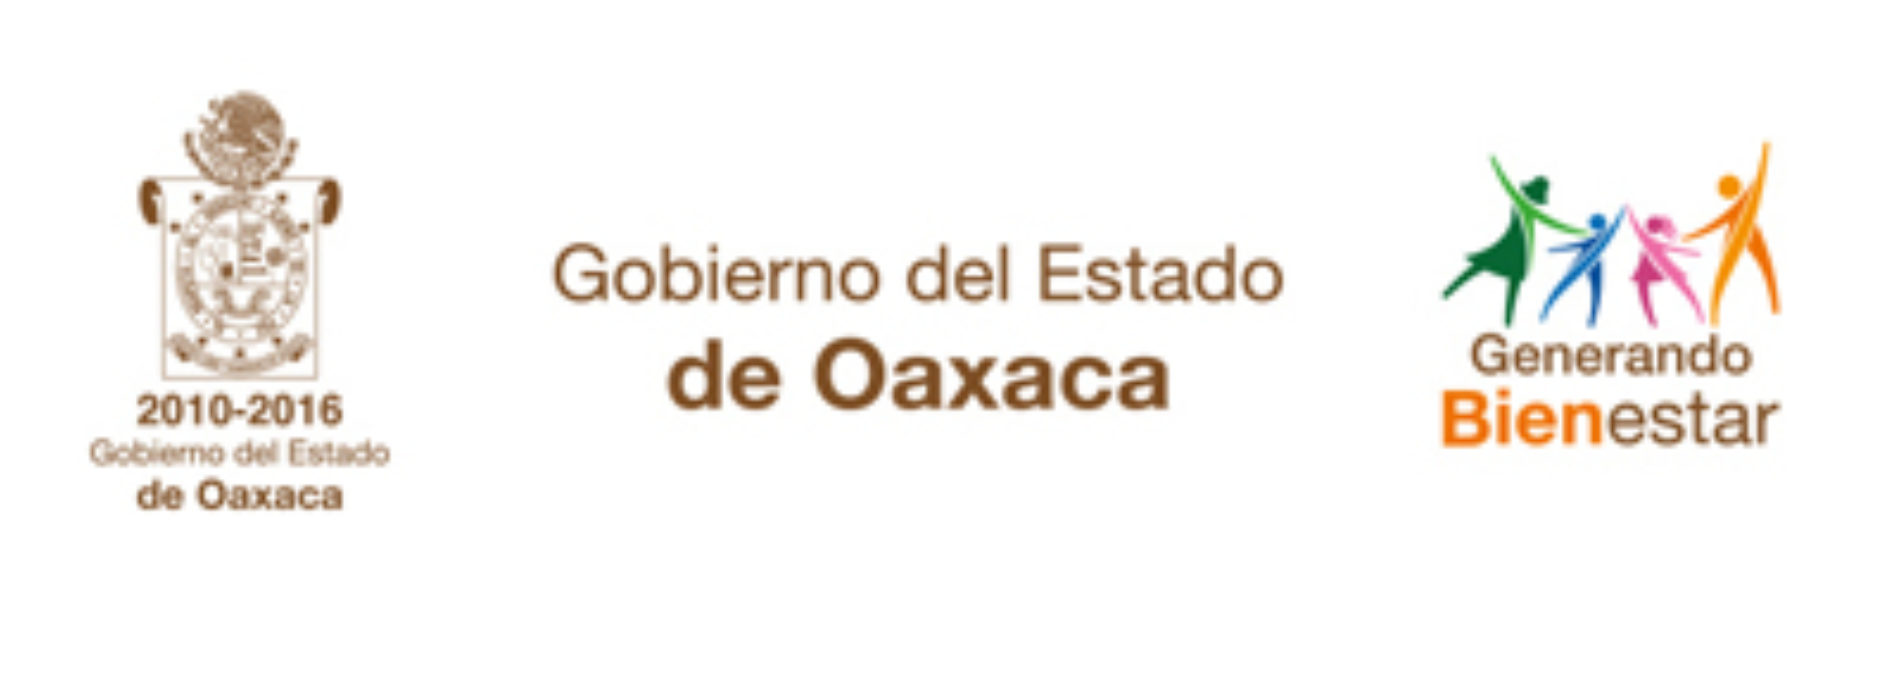 Autoriza Congreso de la Unión presupuesto de 85.5 MMDP para Oaxaca: Gabino Cué